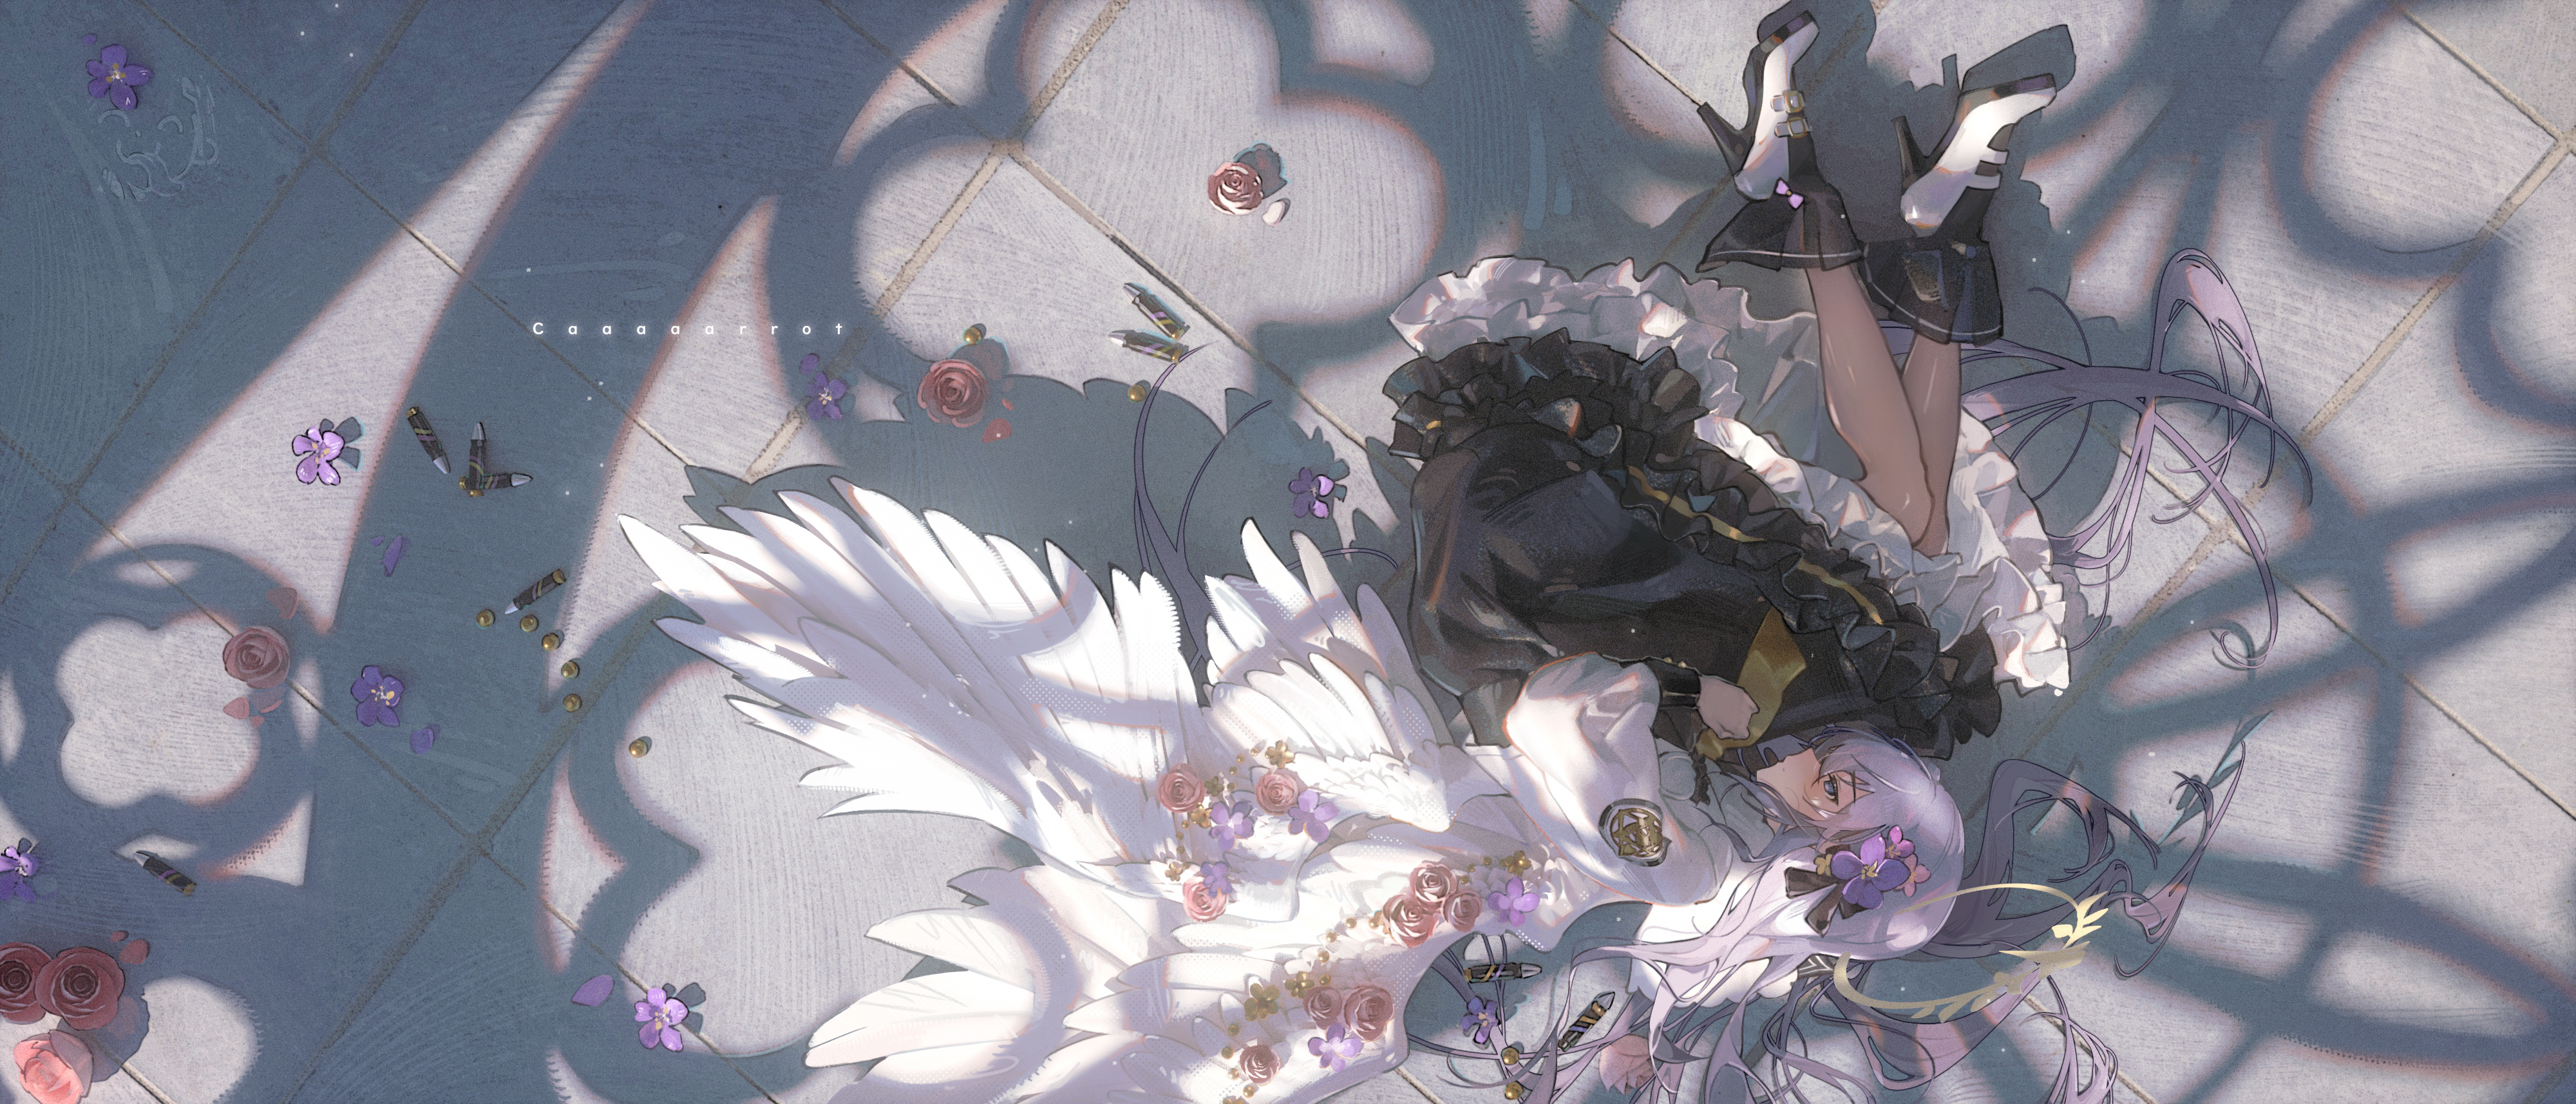 Caaaaarrot Anime Girls Wings Lying On Side Flowers Heels Angel Wings Petals Dress 4000x1714